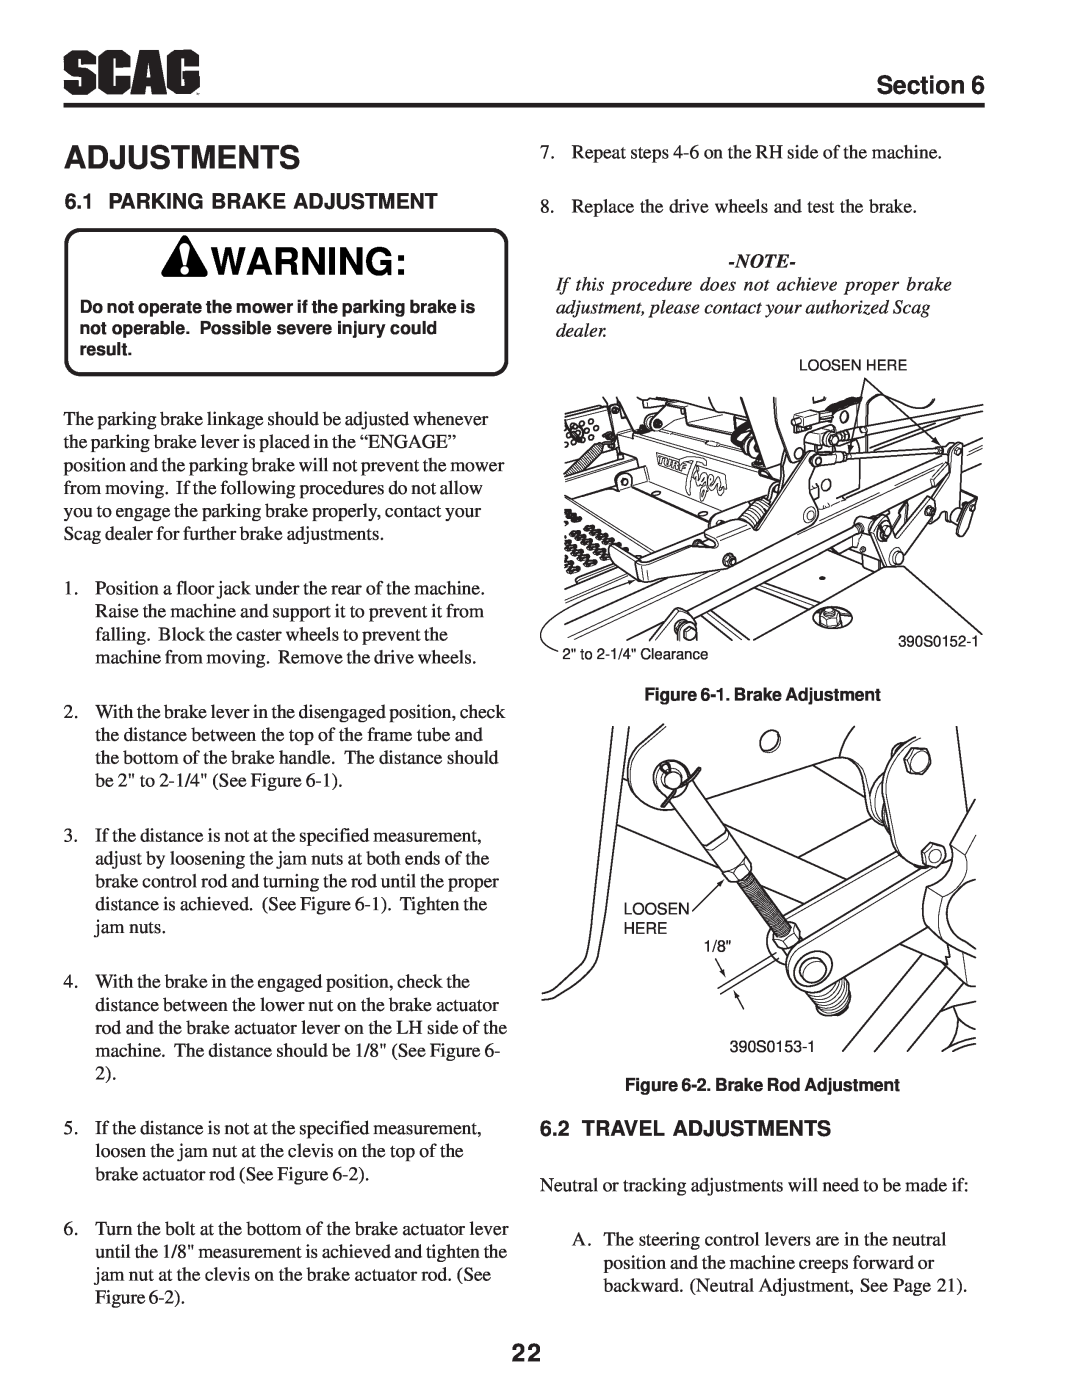 Scag Power Equipment STT-31BSD manual Parking Brake Adjustment, Travel Adjustments, Section 